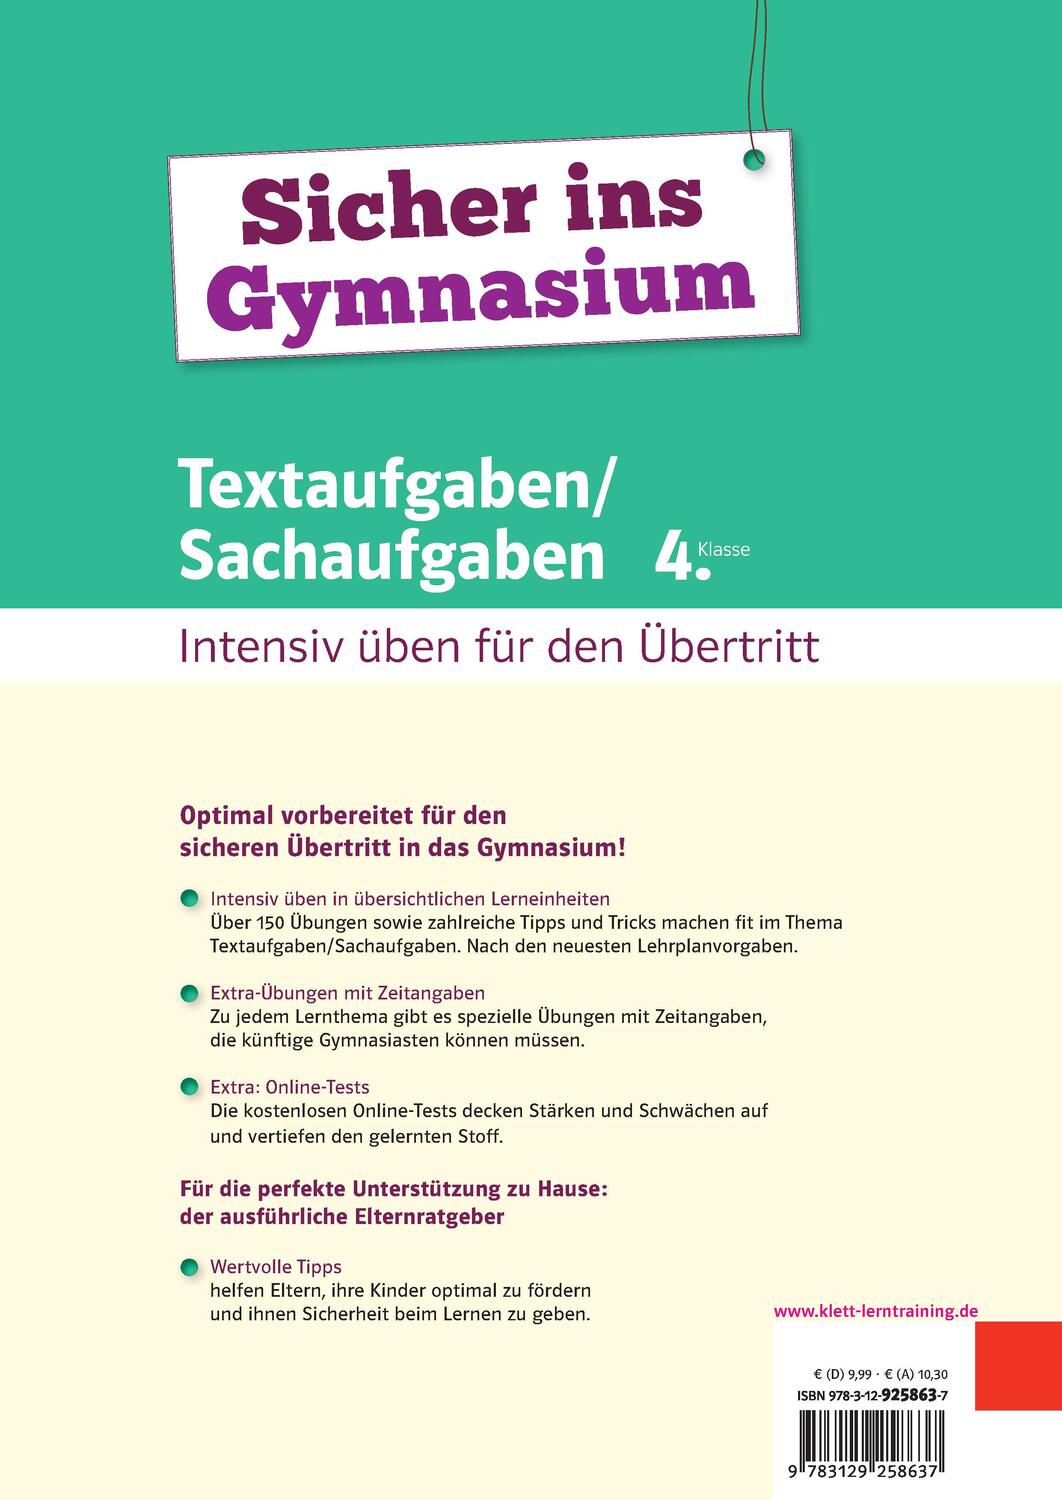 Bild: 9783129258637 | Sicher ins Gymnasium Textaufgaben/Sachaufgaben 4. Klasse | Taschenbuch